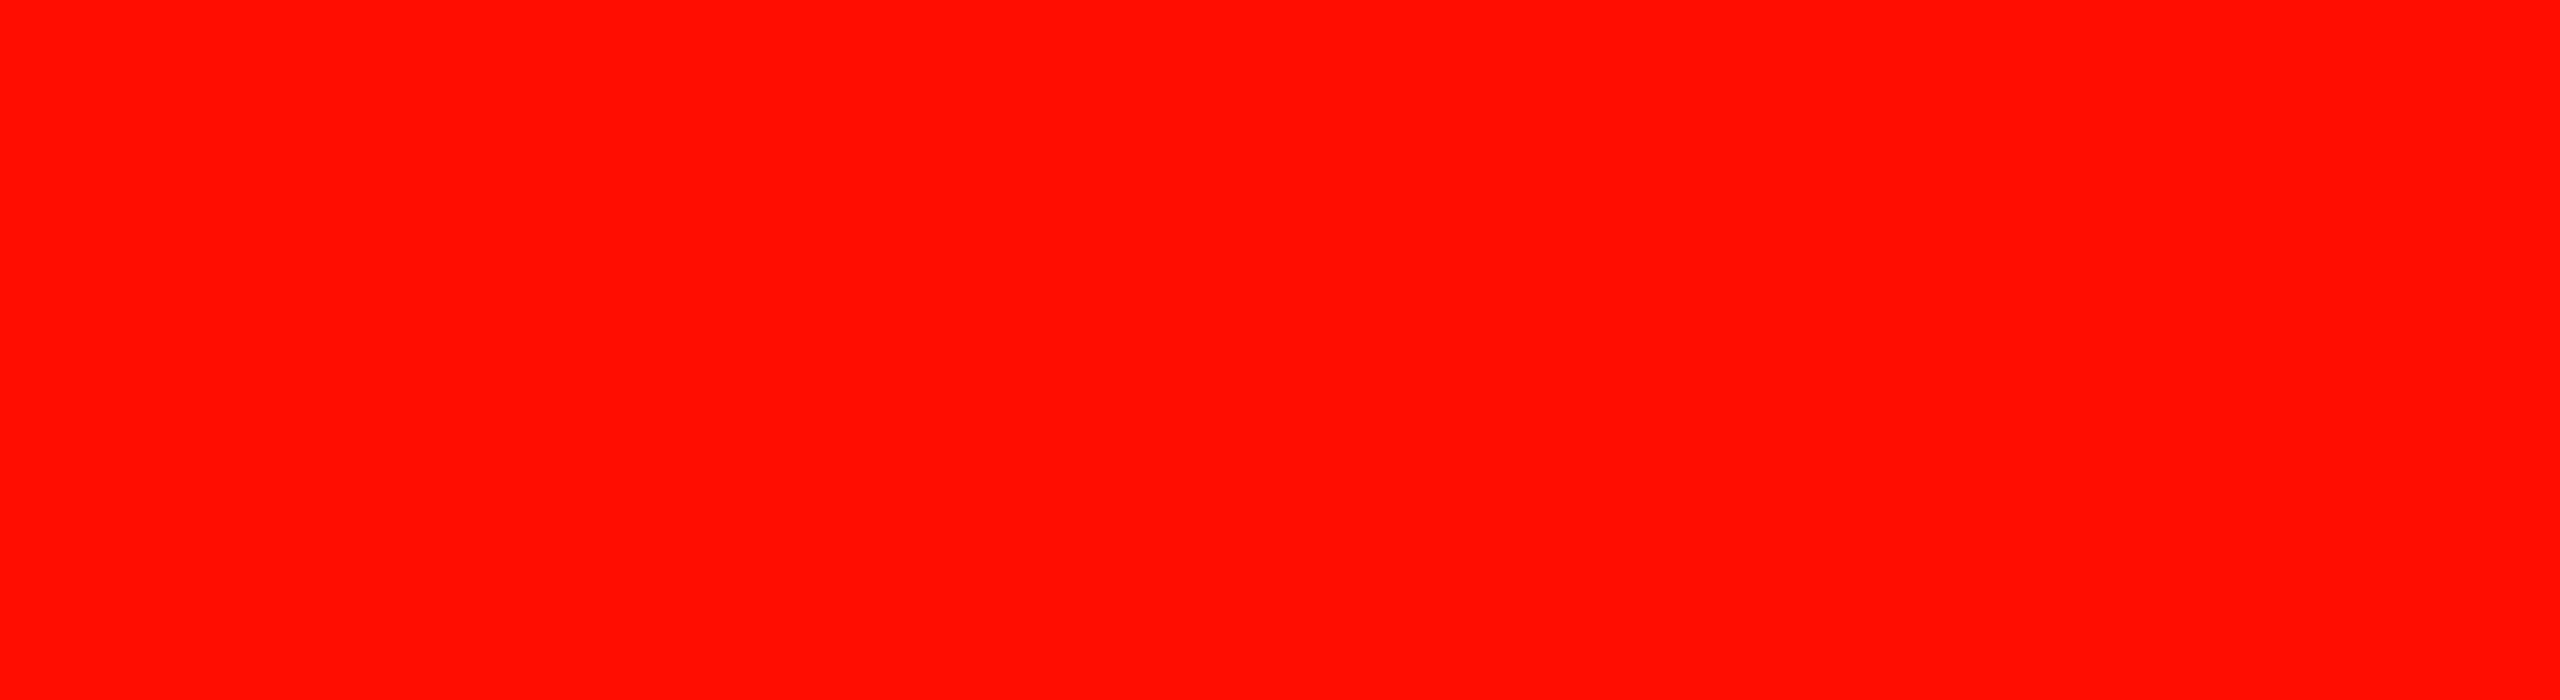 Develey roter Hintergrund